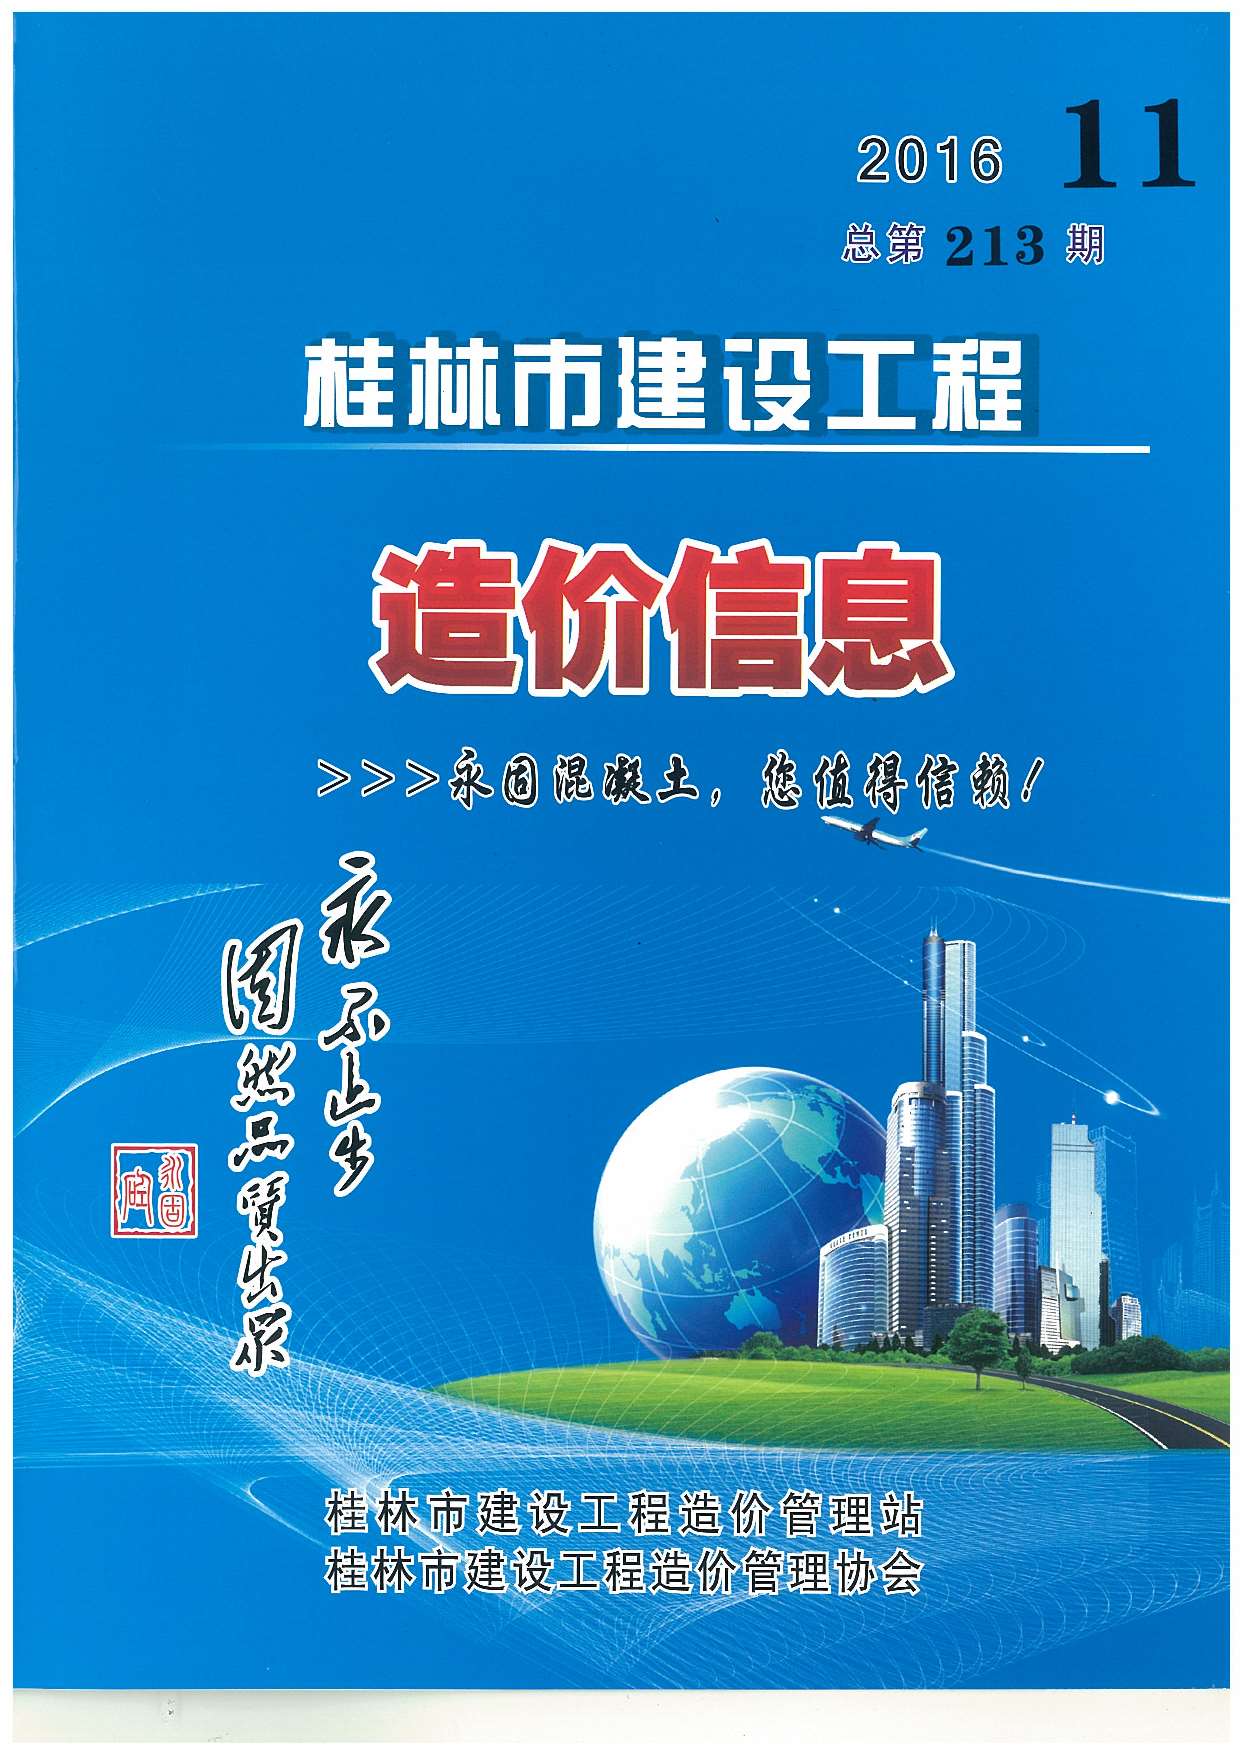 桂林市2016年11月建设工程造价信息造价库信息价